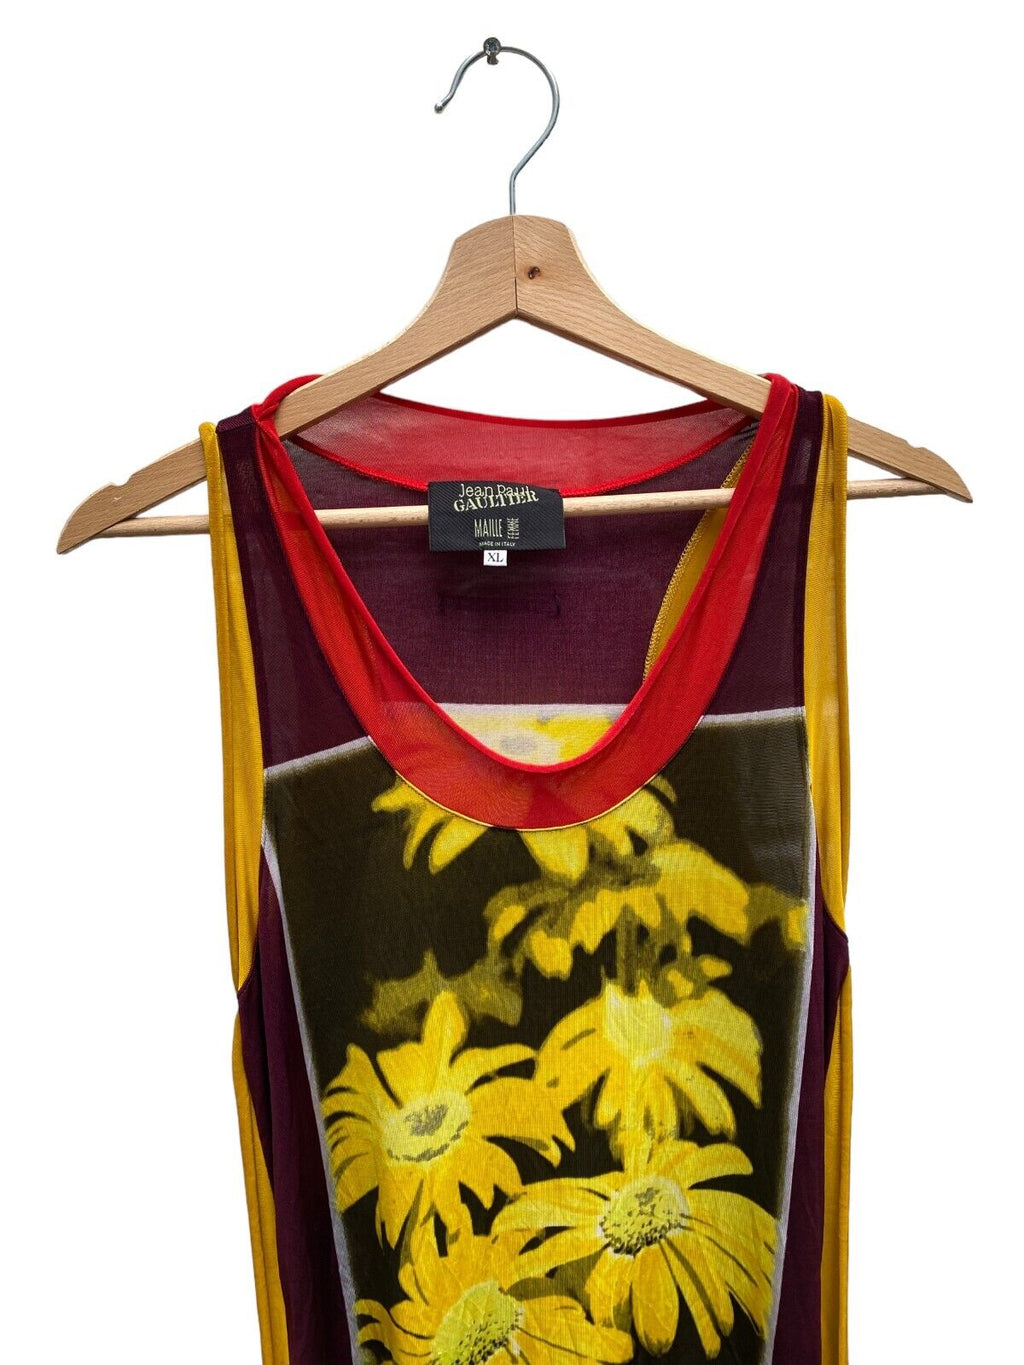 1990s Vintage Floral Elongated Mesh Maxi Dress Size XL  RARE